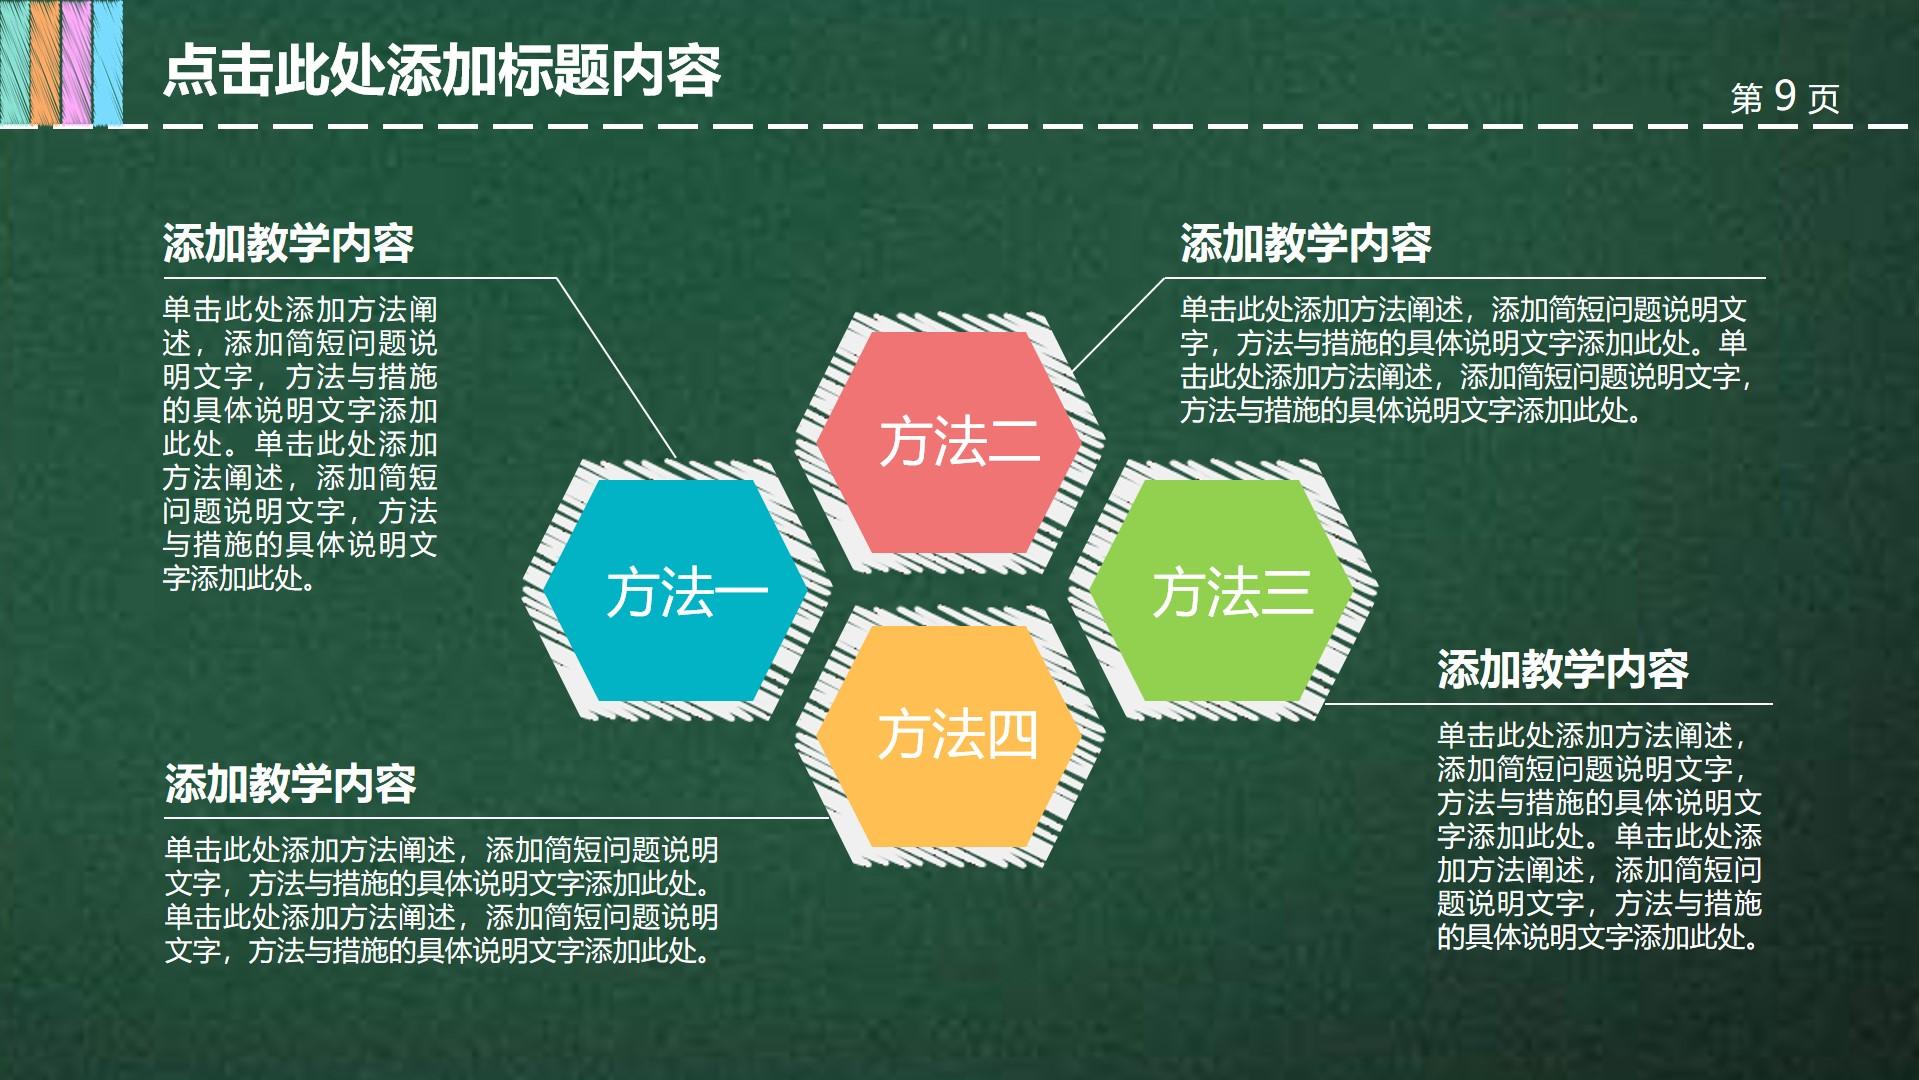 教育教学绿色青色简洁方法措施教学云素材PPT模板1672672649735